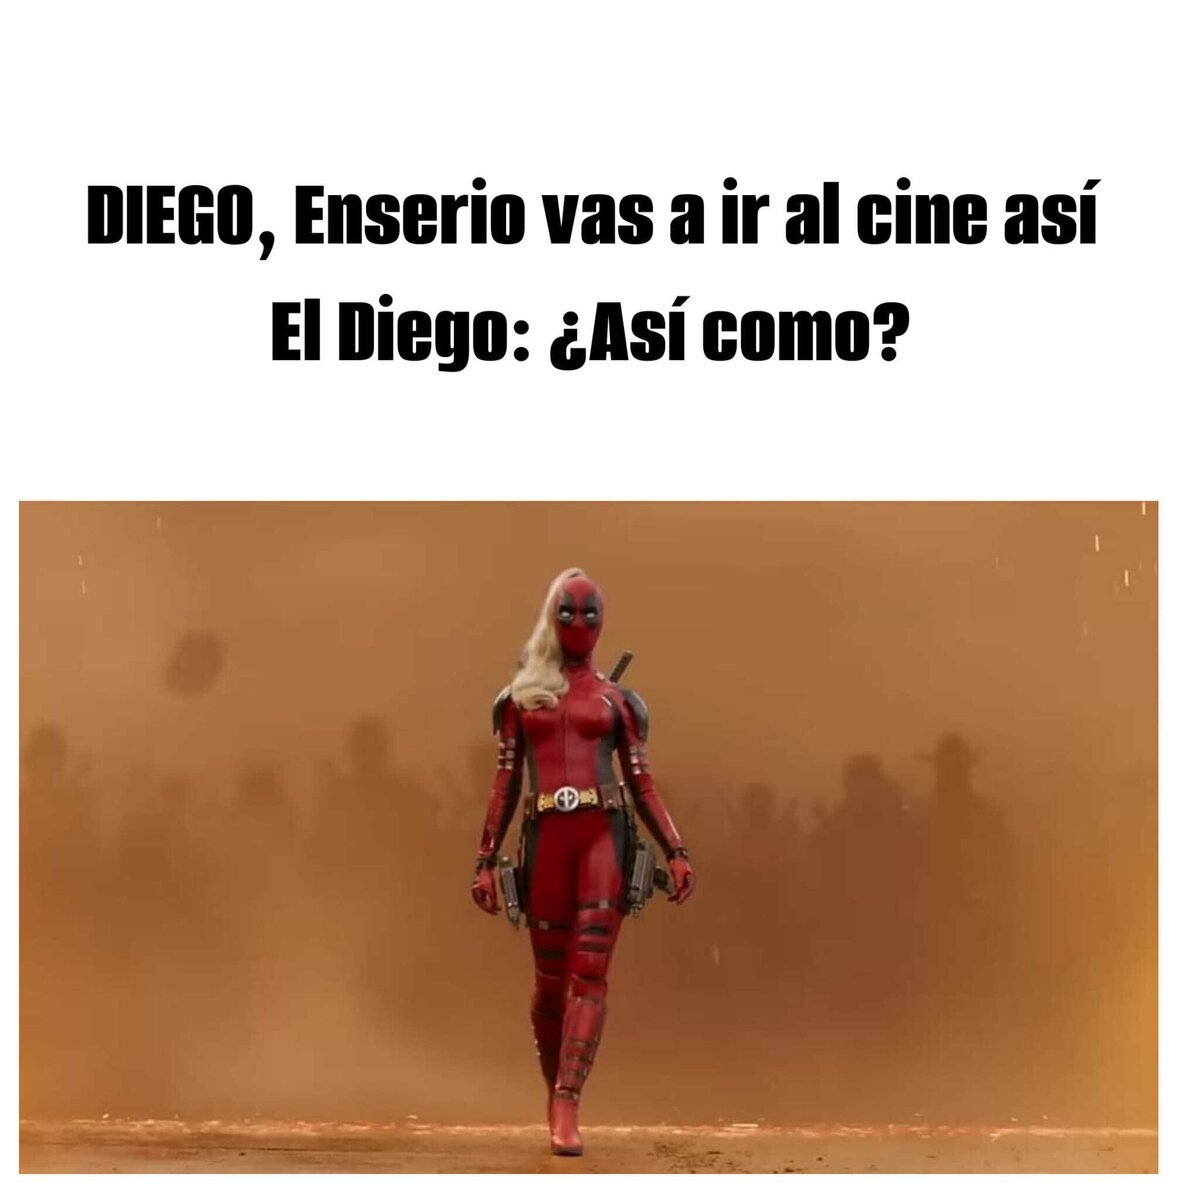 El Diego se ve Di-vi-no